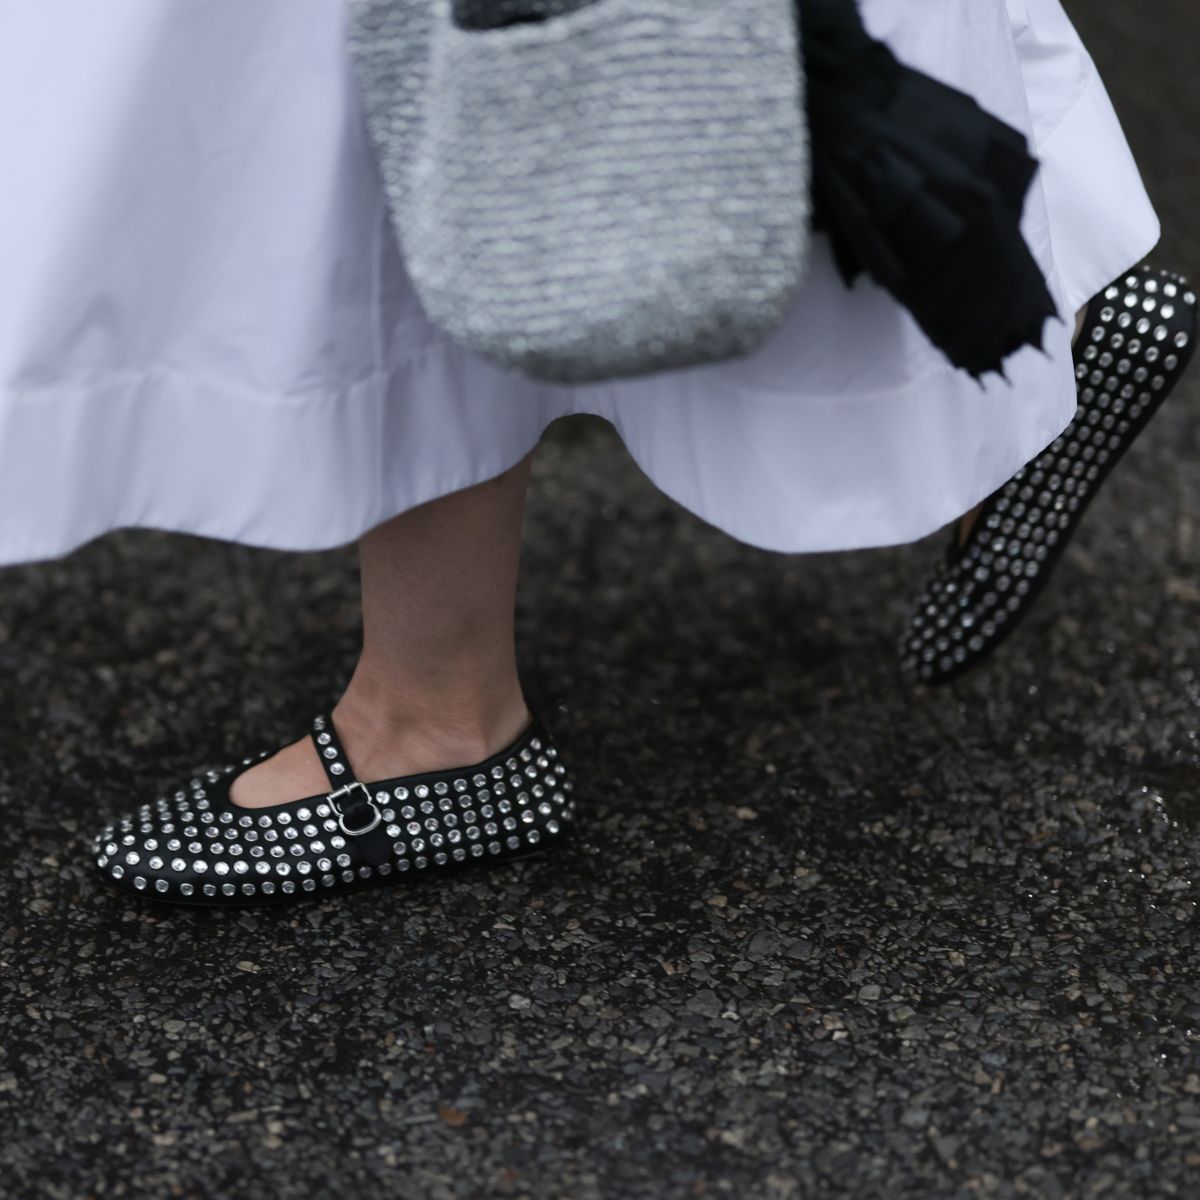 bailarinas merceditas mary janes zapatos francesas que son tendencia en otoño en nueva york